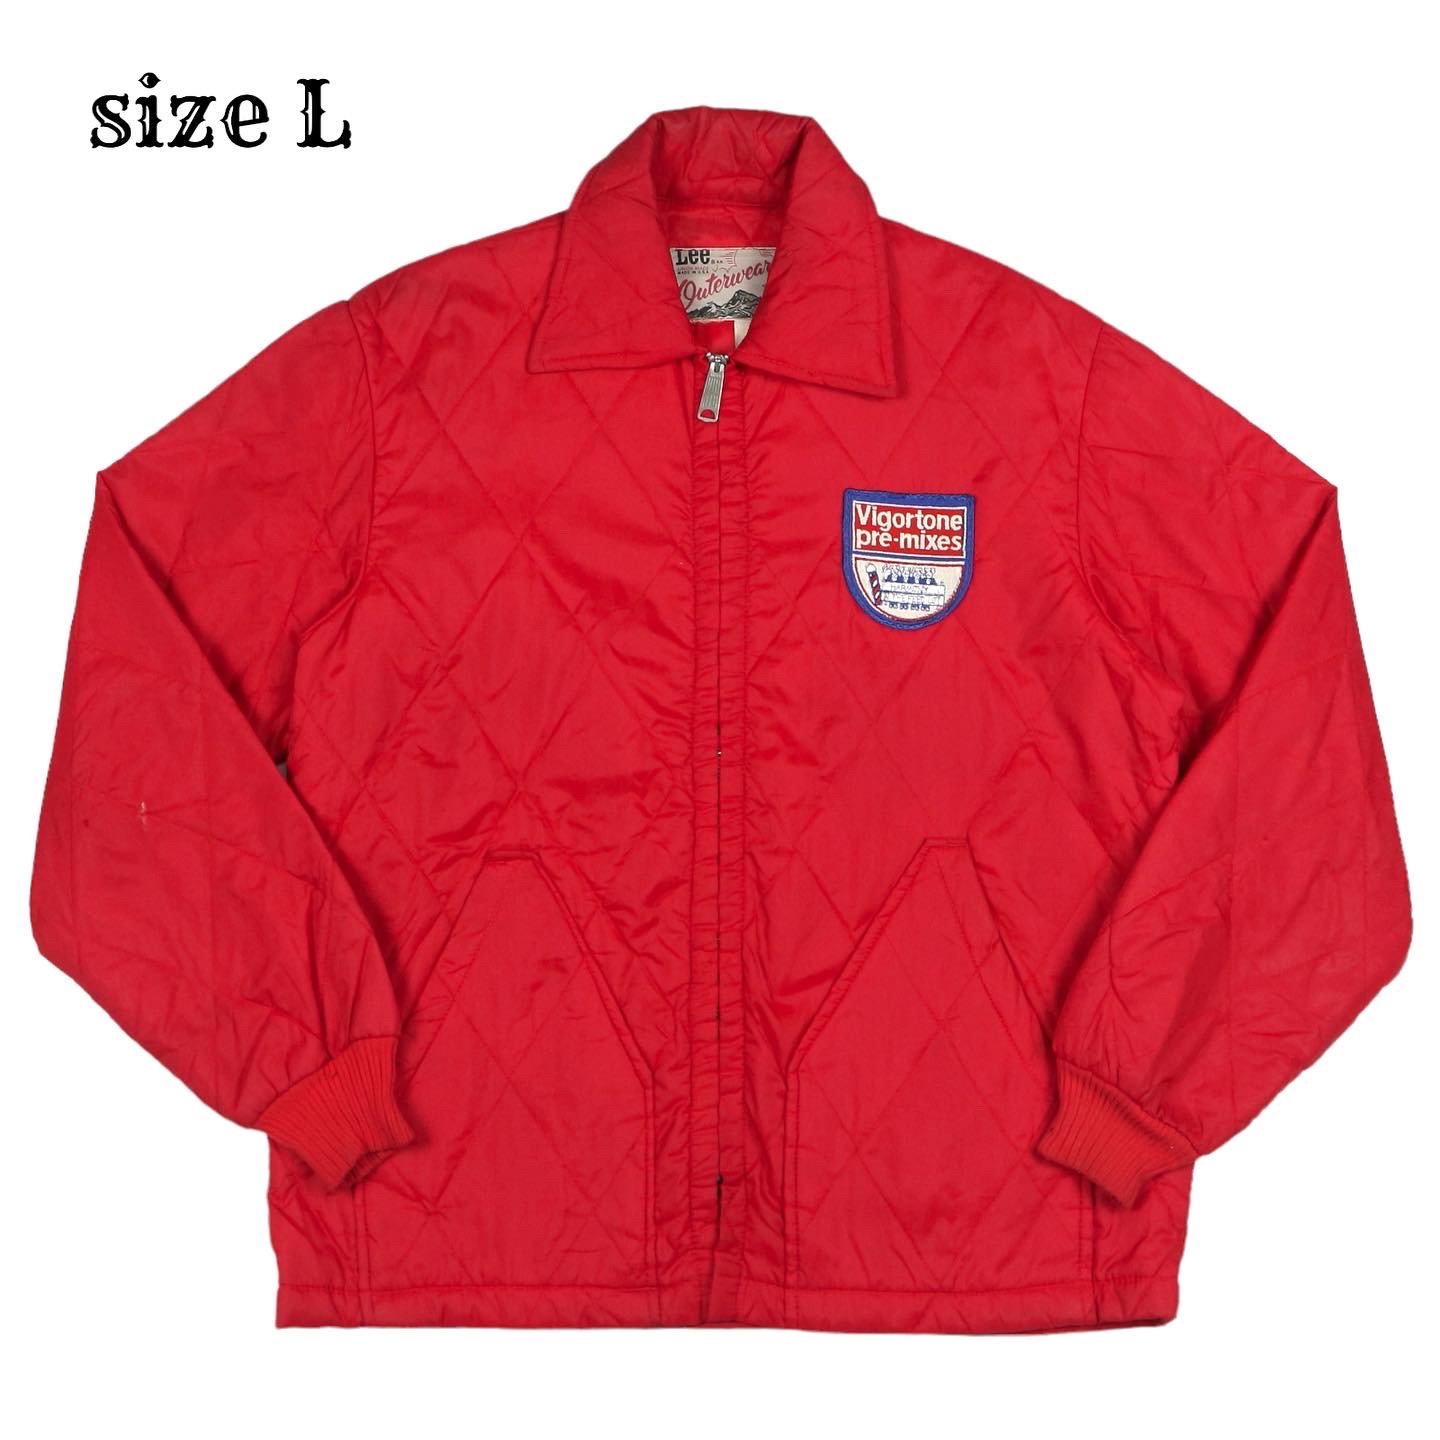 Vintage 70s Lee USA Quilted Jacket Size L denimister